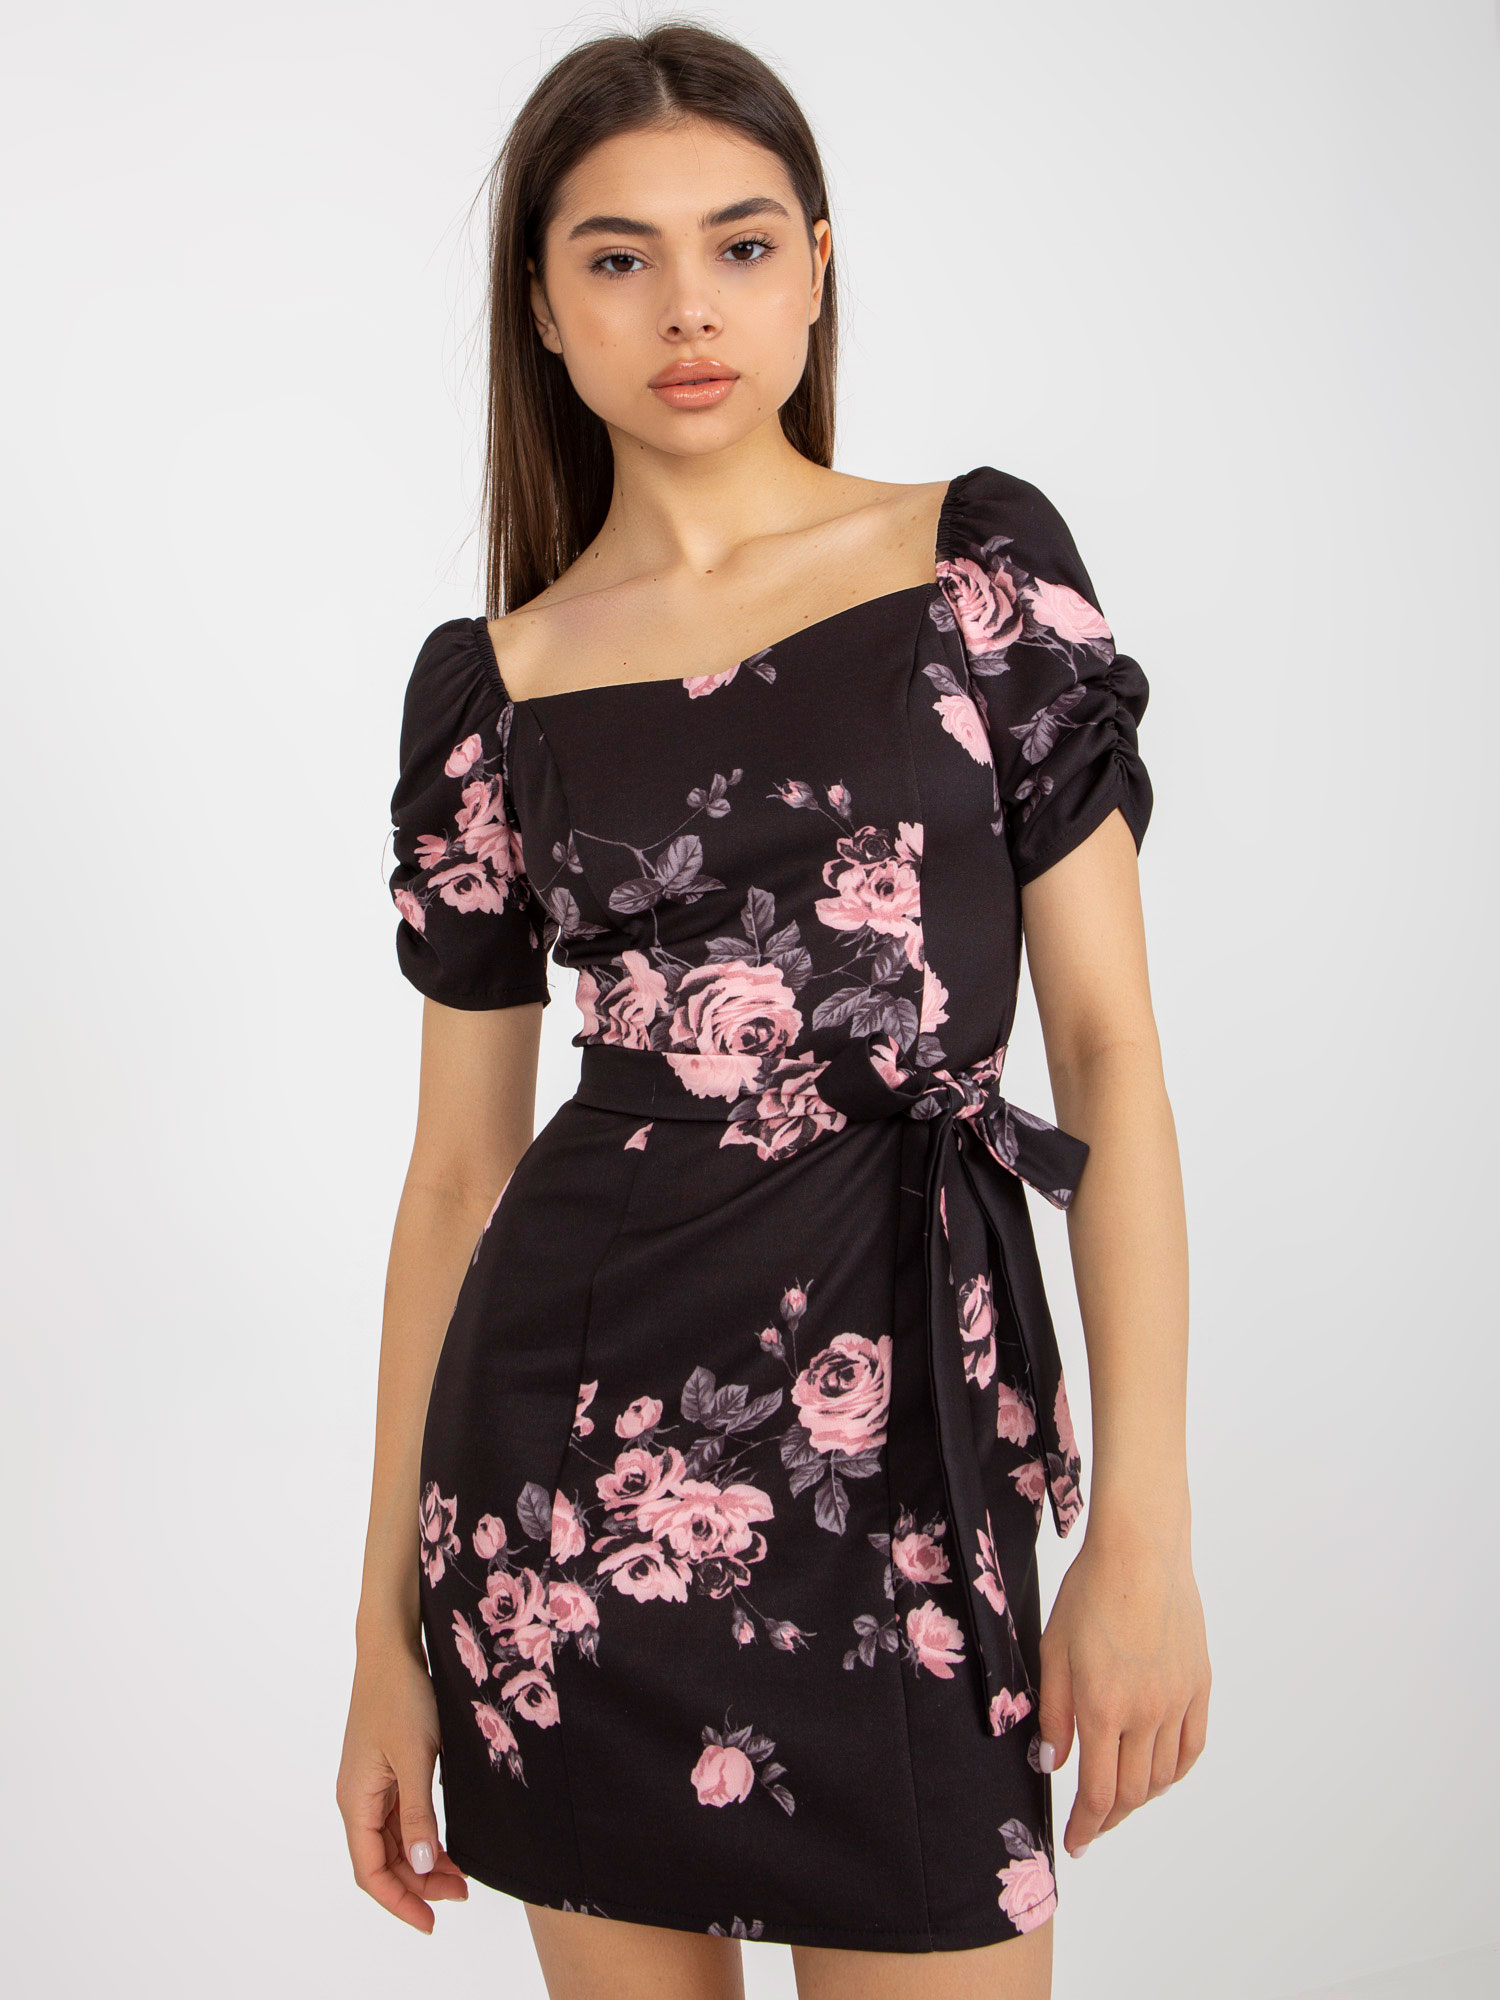 Černo-růžové květinové mini šaty s páskem LK-SK-508641.29-black-pink Velikost: 42